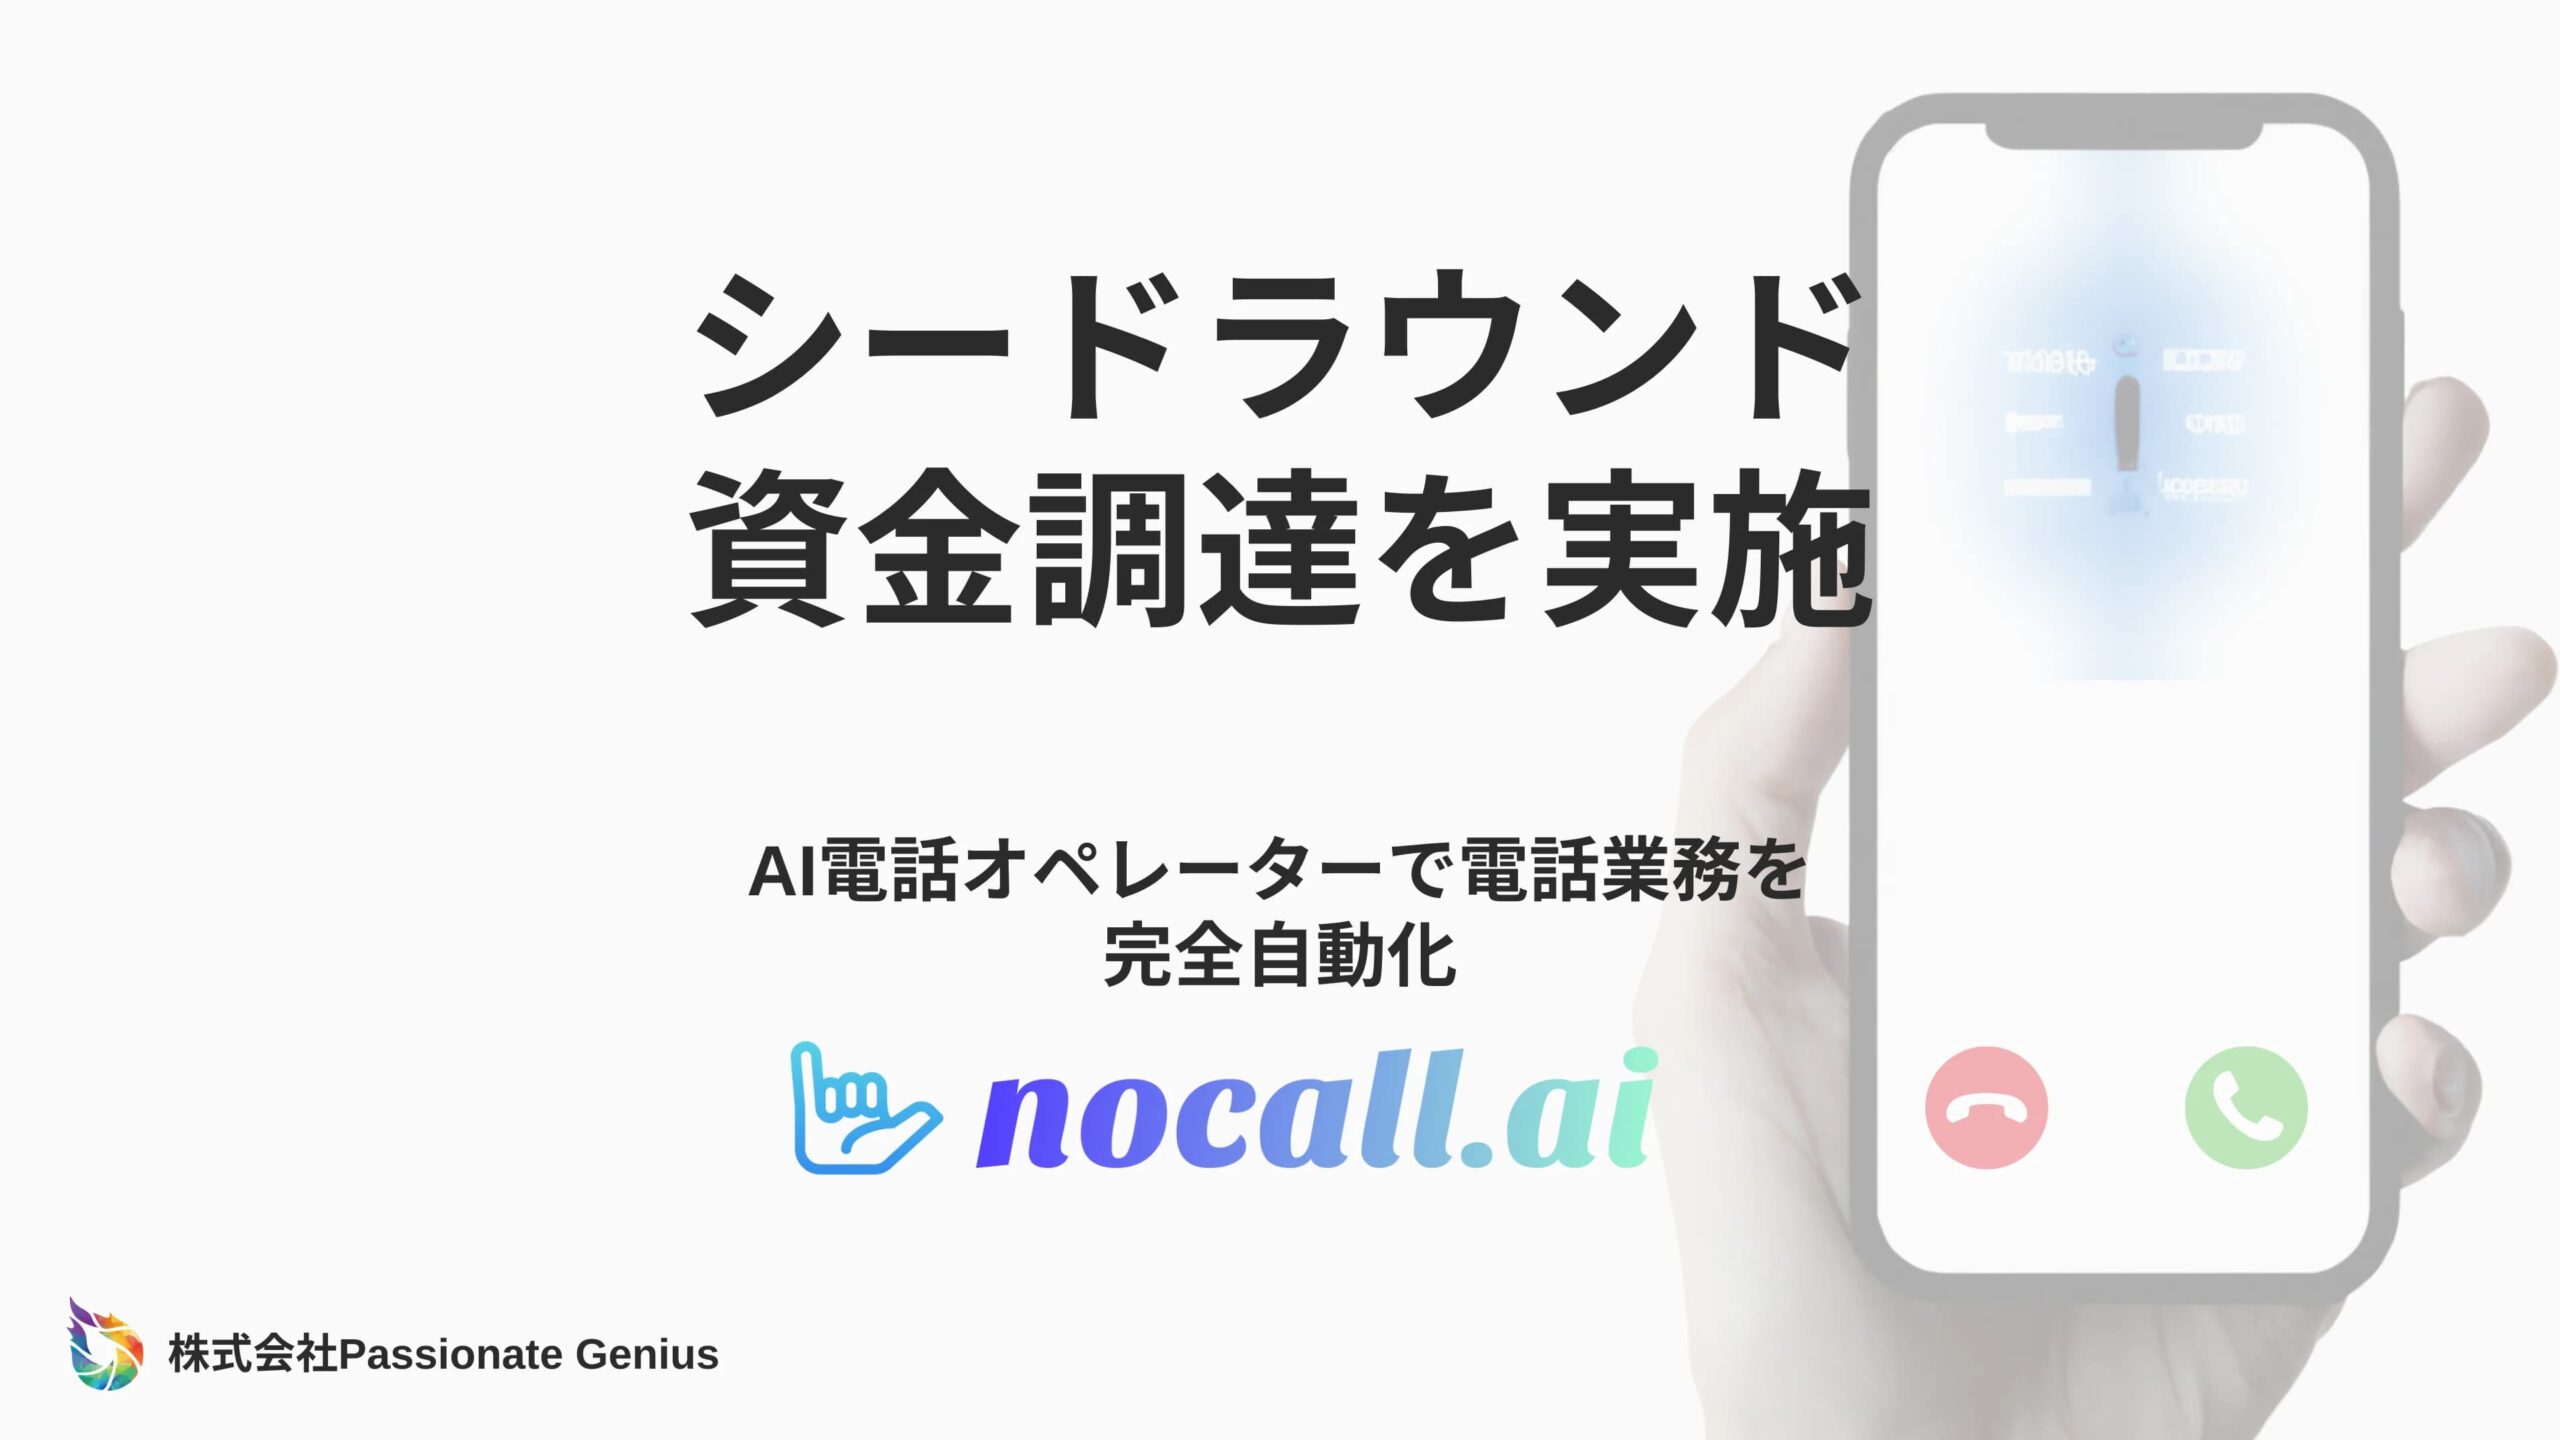 AI電話オペレーターによる電話業務の完全自動化サービスnocall.aiを開発する株式会社Passionate Geniusがシードラウンドにて資金調達